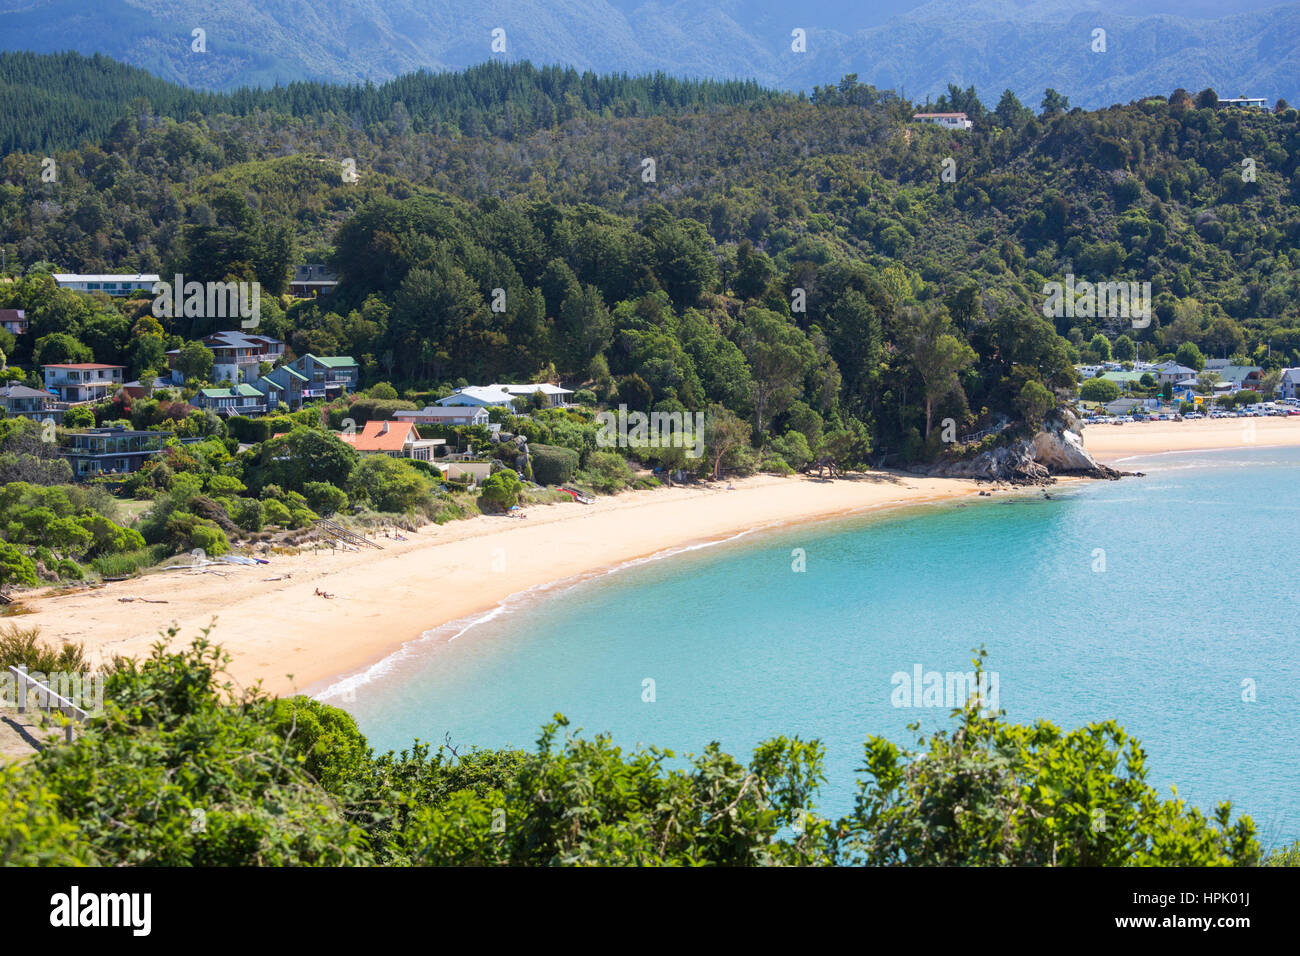 Kaiteriteri, Tasman, New Zealand. View over the turquoise waters of Tasman Bay from hillside above Little Kaiteriteri Beach. Stock Photo